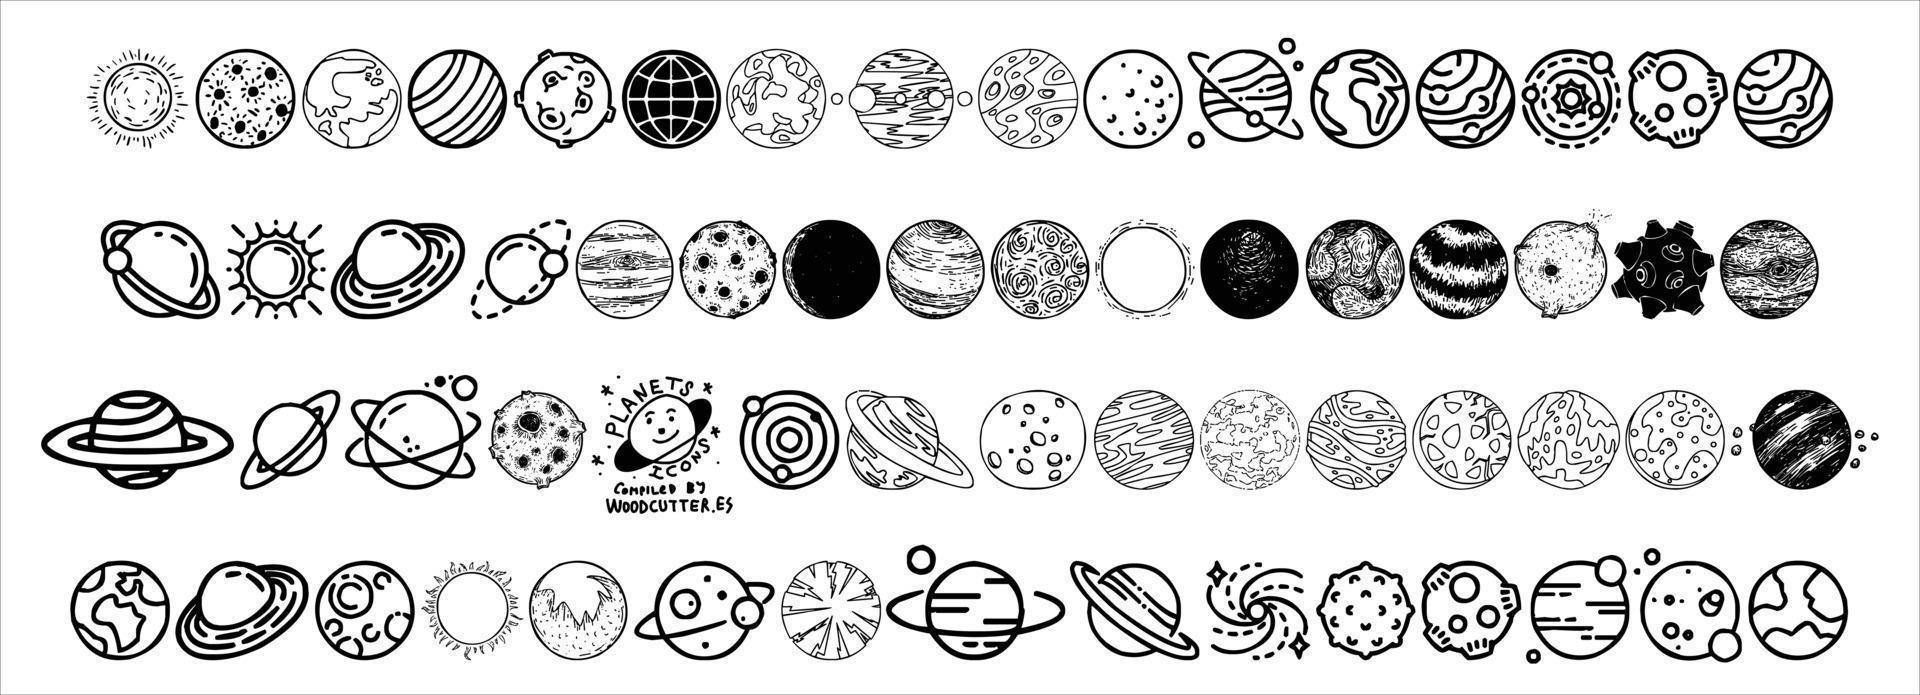 en samling av planet skisser för ikoner eller logotyper på en svart och vit bakgrund vektor